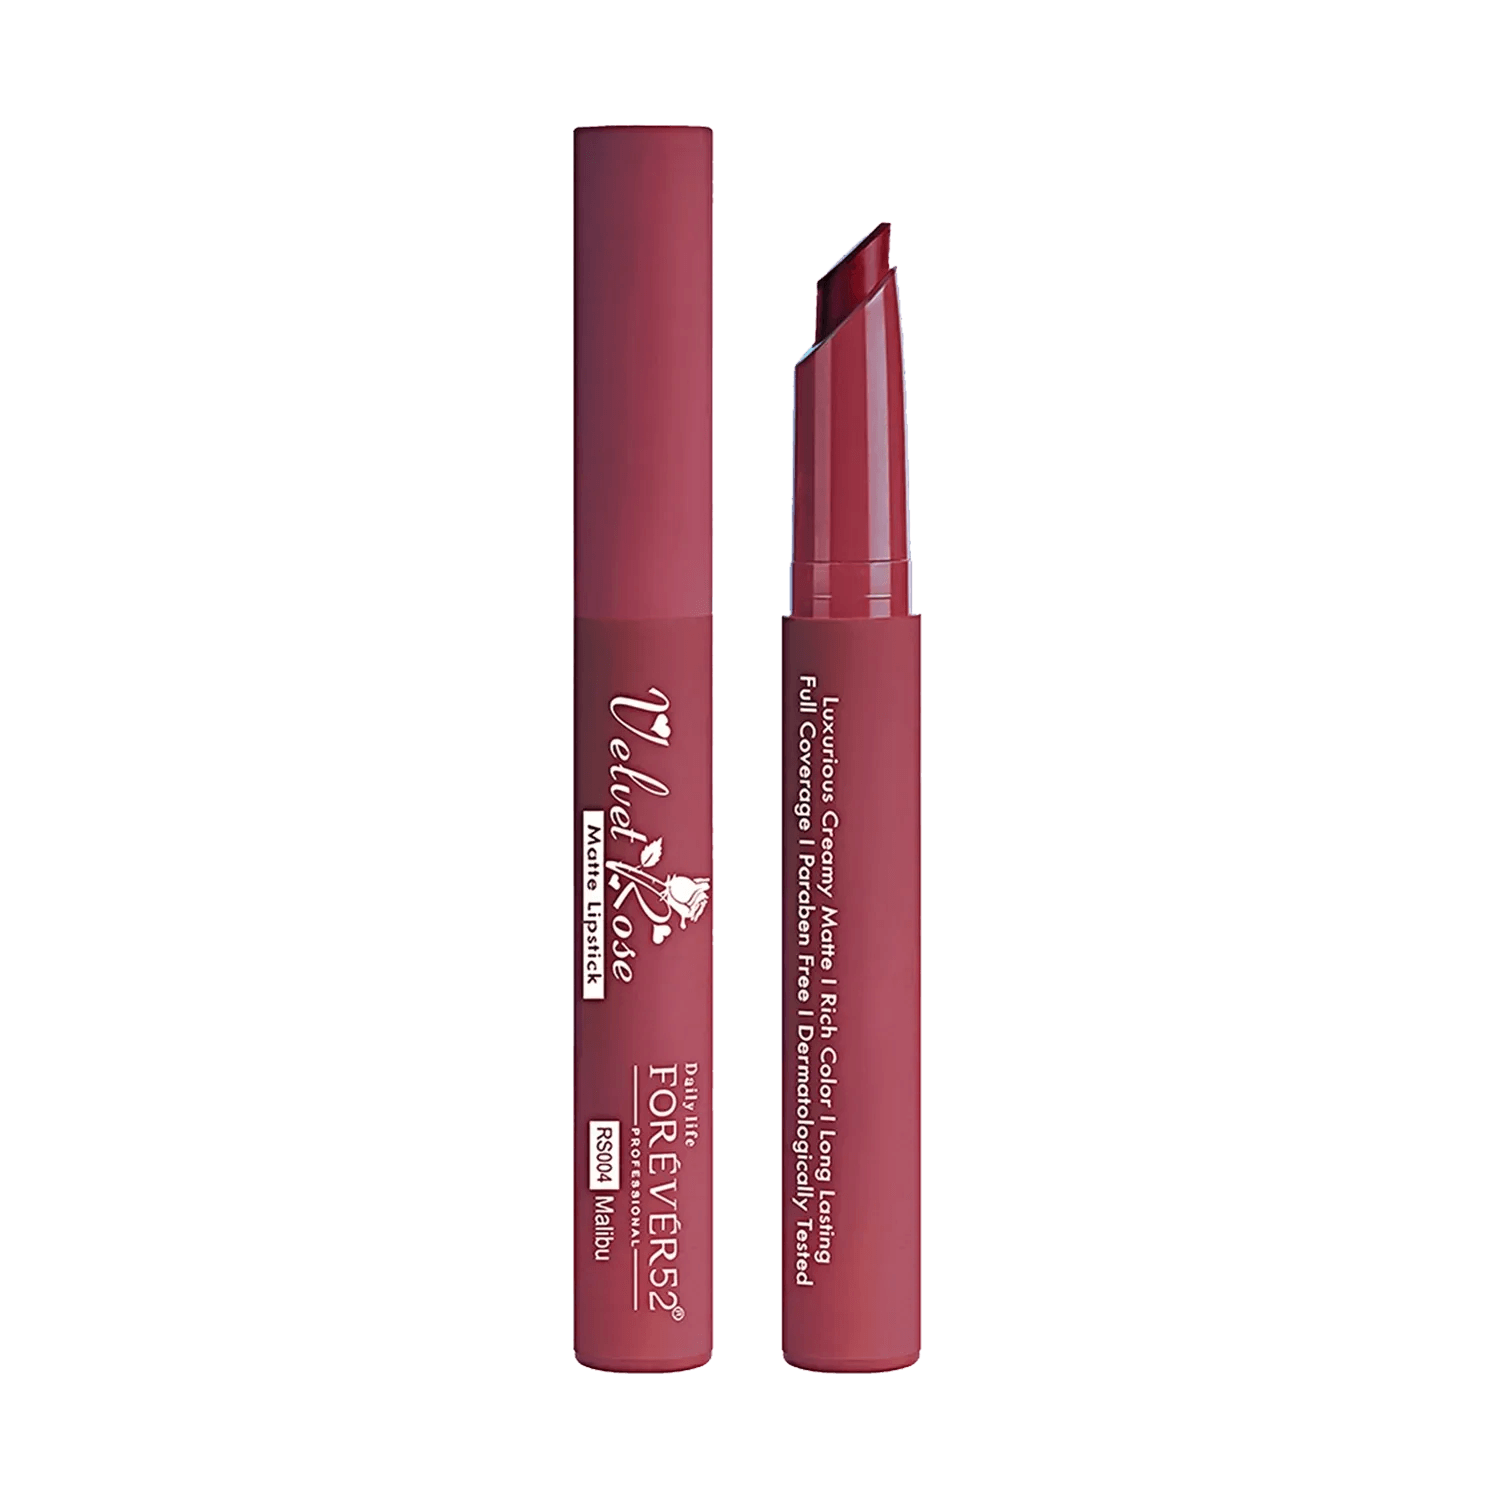 Daily Life Forever52 | Daily Life Forever52 Velvet Rose Matte Lipstick RS004 (2.8gm)